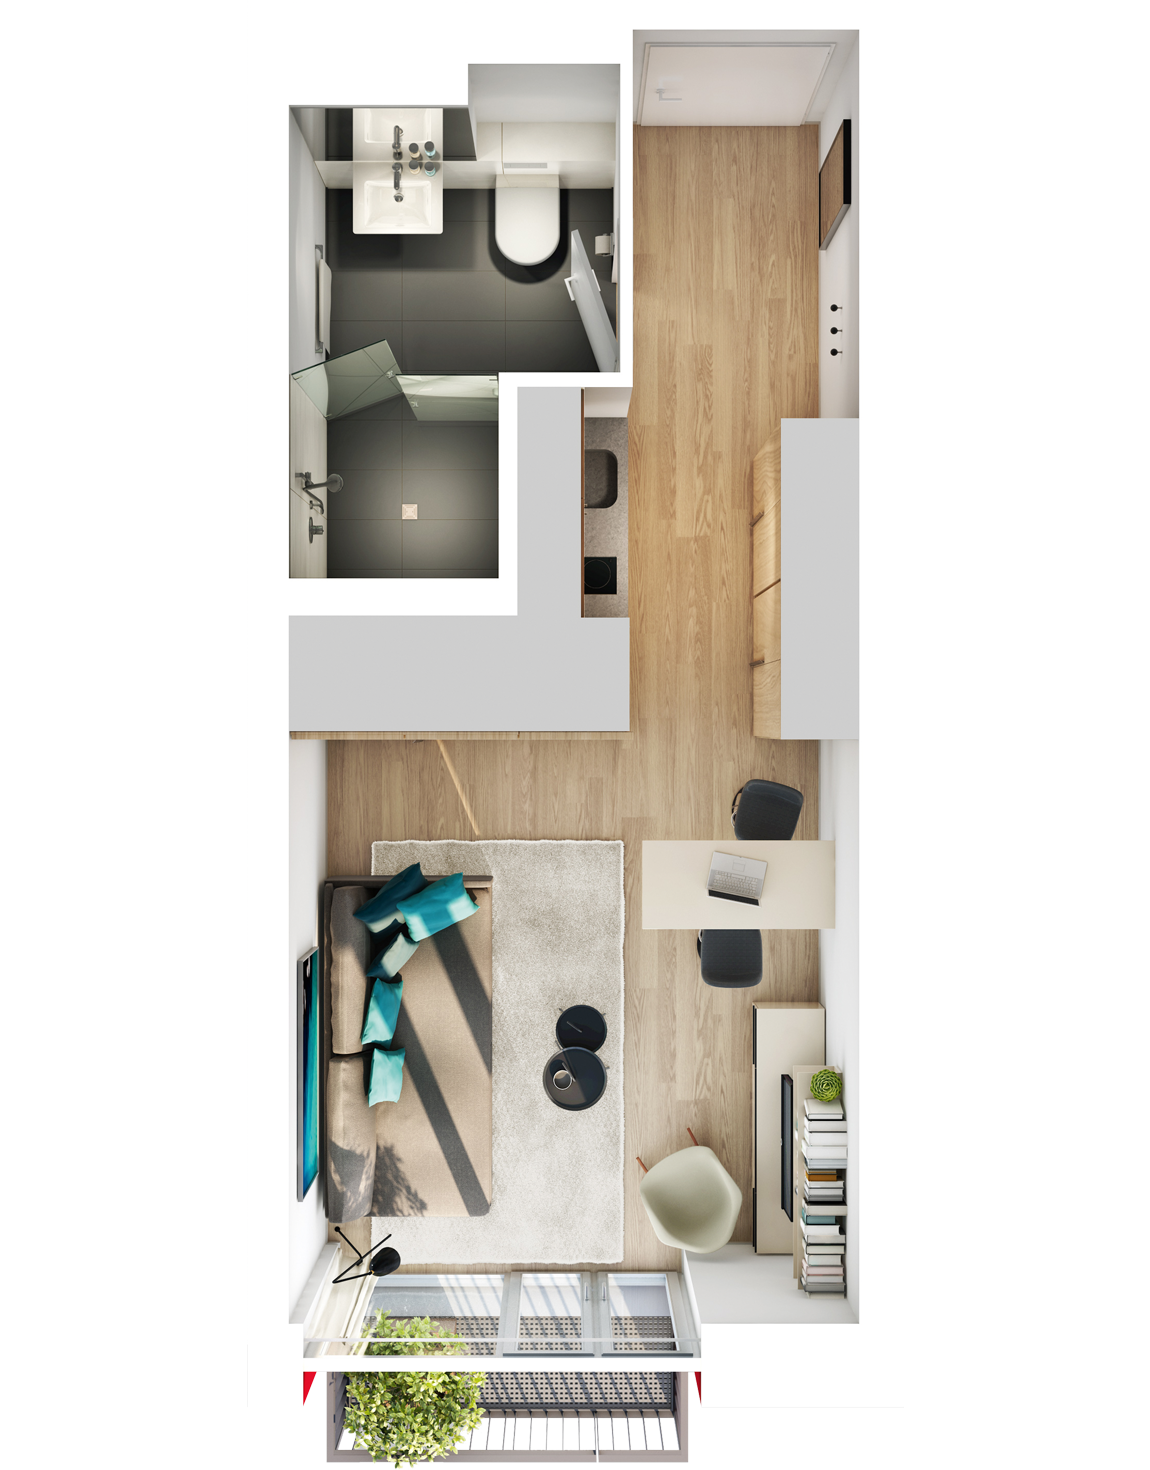 Visualisierung Beispiel 1-Zimmer-Wohnung Typ K mit Bad, Küchenzeile, Wohnbereich und Balkon im studiosus 5 Apartmenthaus in Augsburg